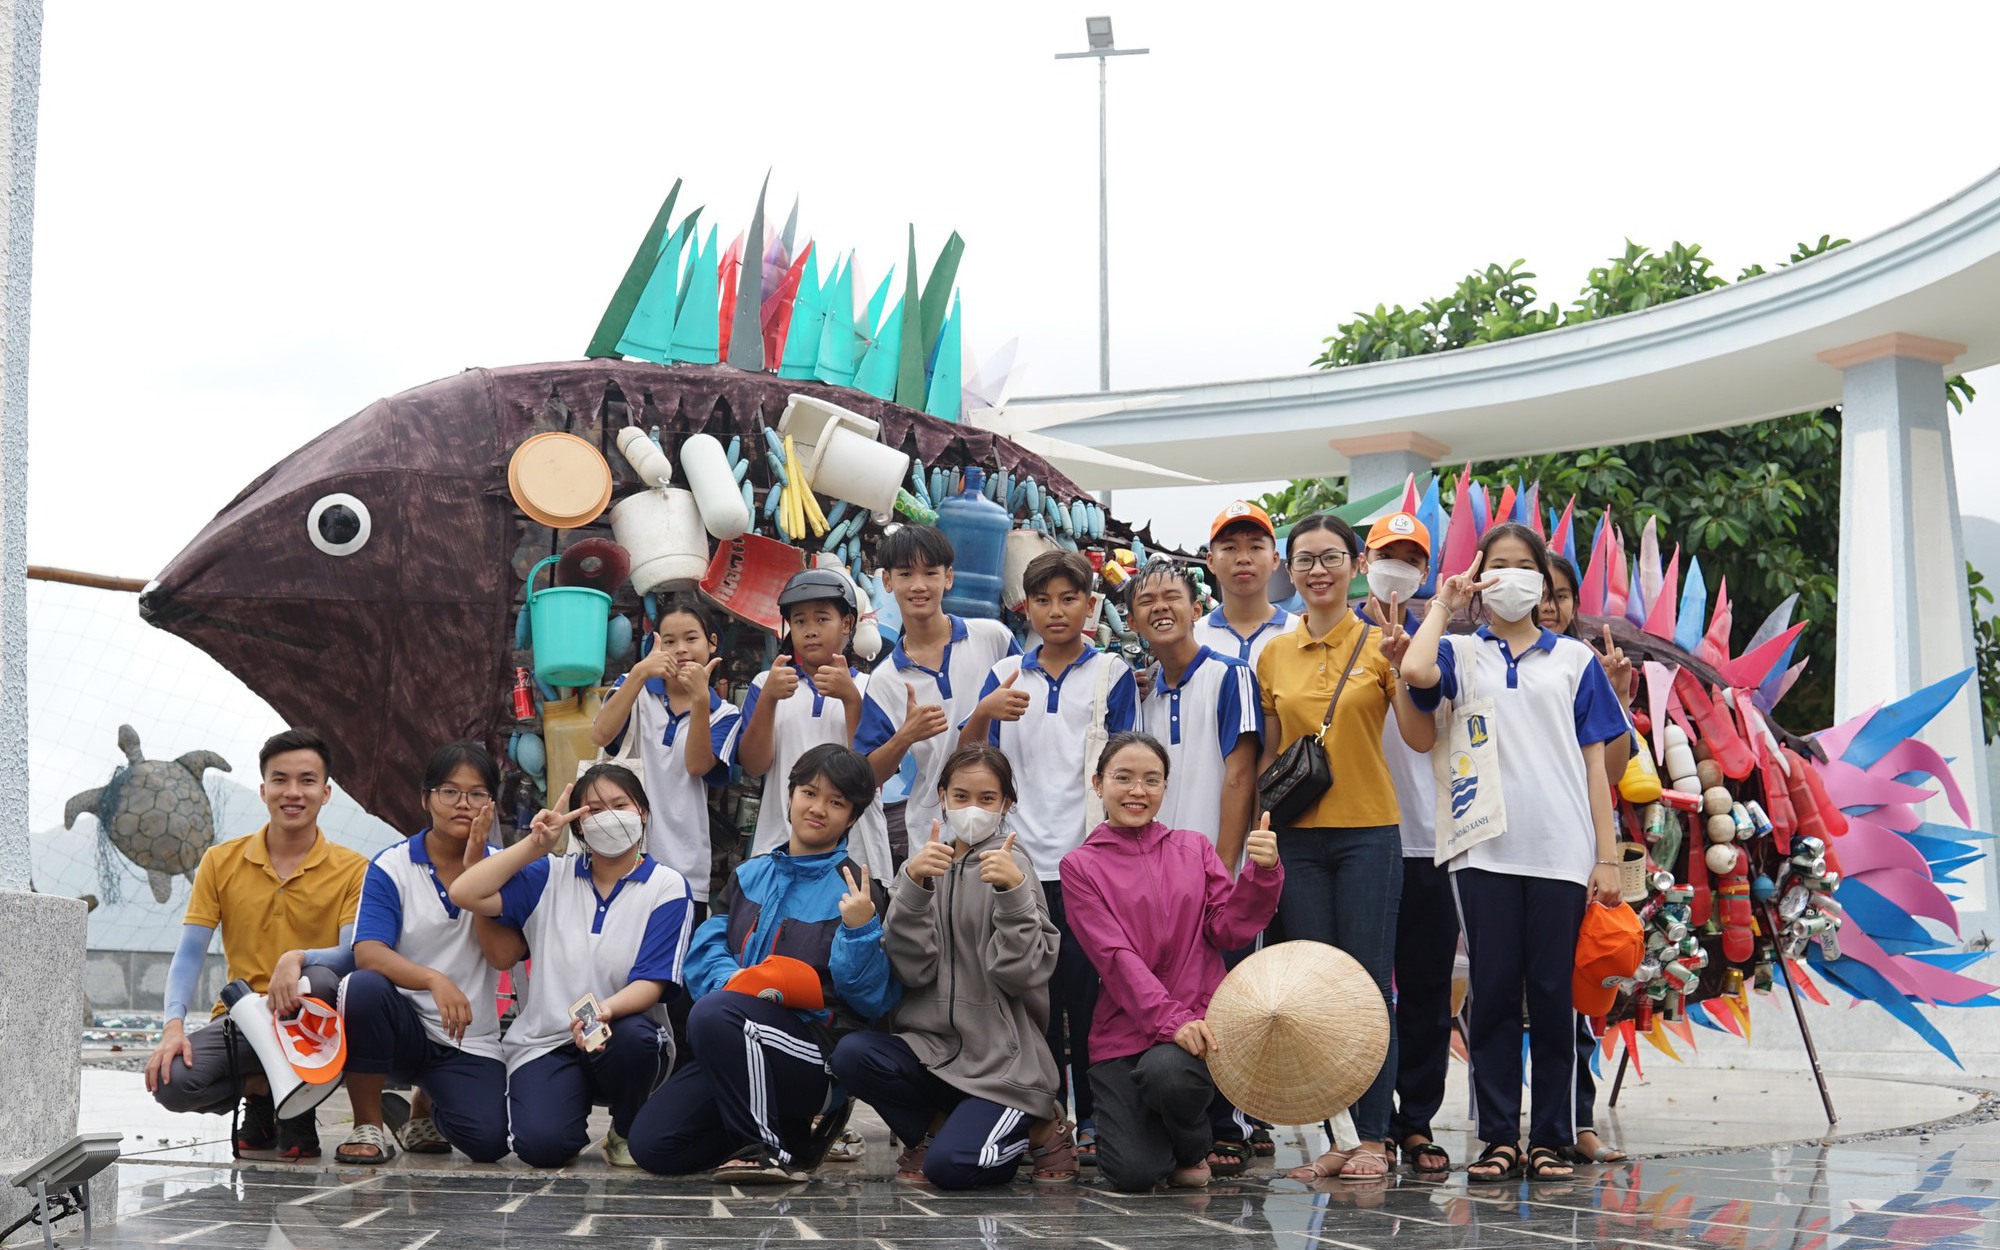 Bà Rịa - Vũng Tàu: Chung tay bảo vệ biển, tặng hàng nghìn túi vải cho du khách để cổ động cho môi trường xanh